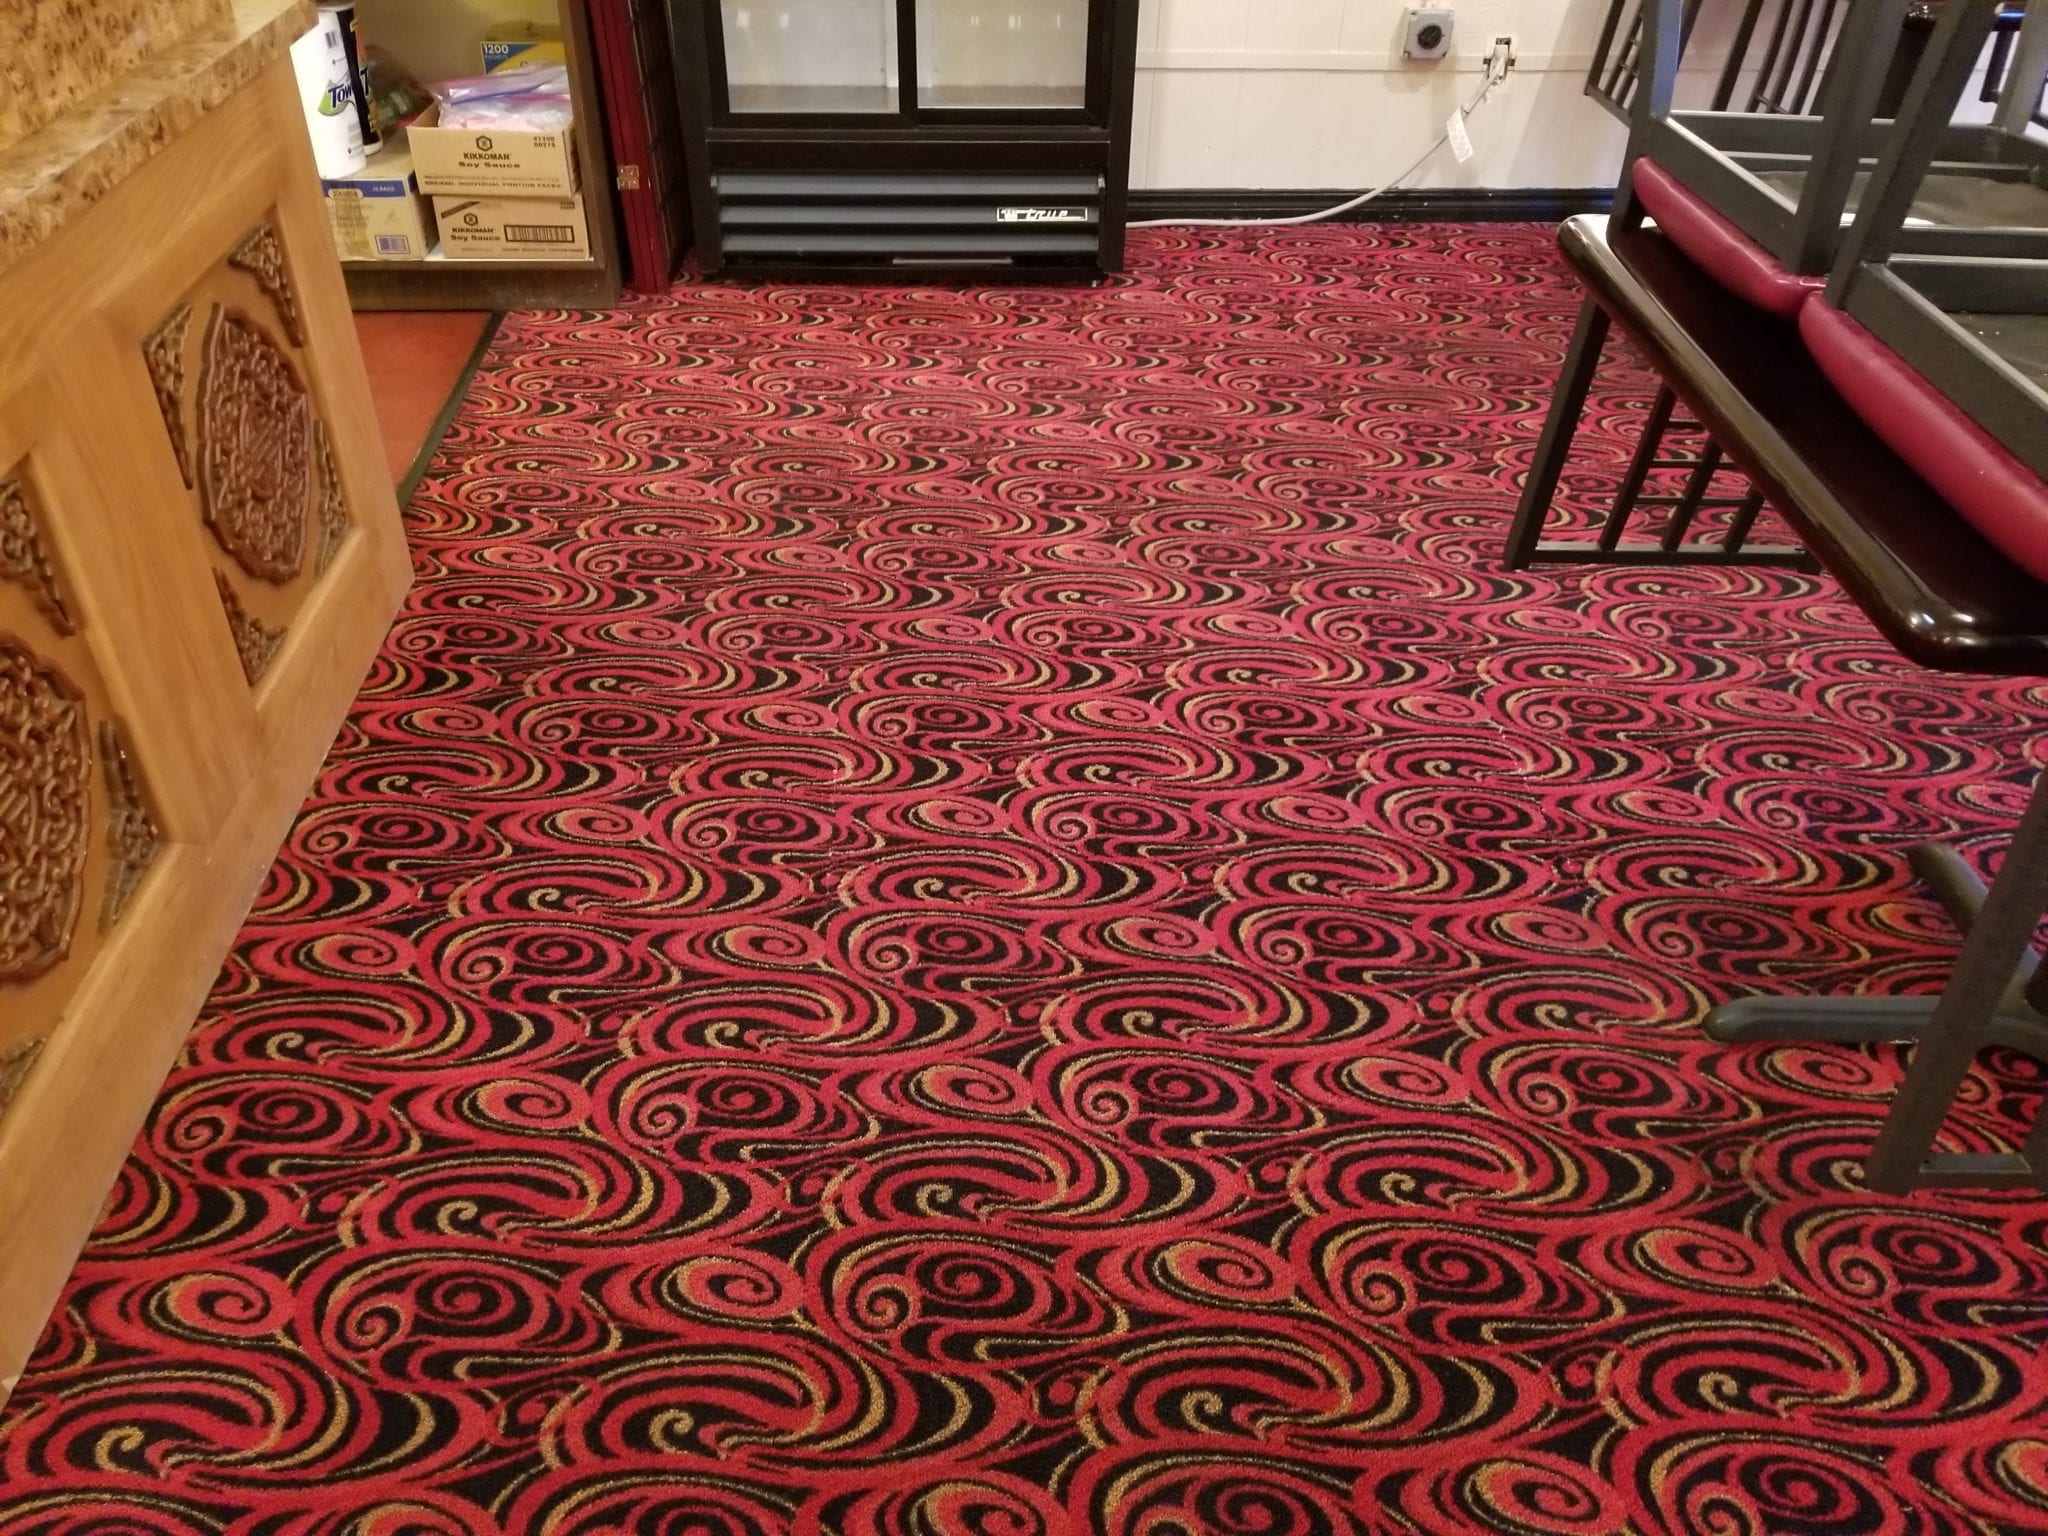 Albuquerque Carpet Cleaning New Mexico Carpet Repair